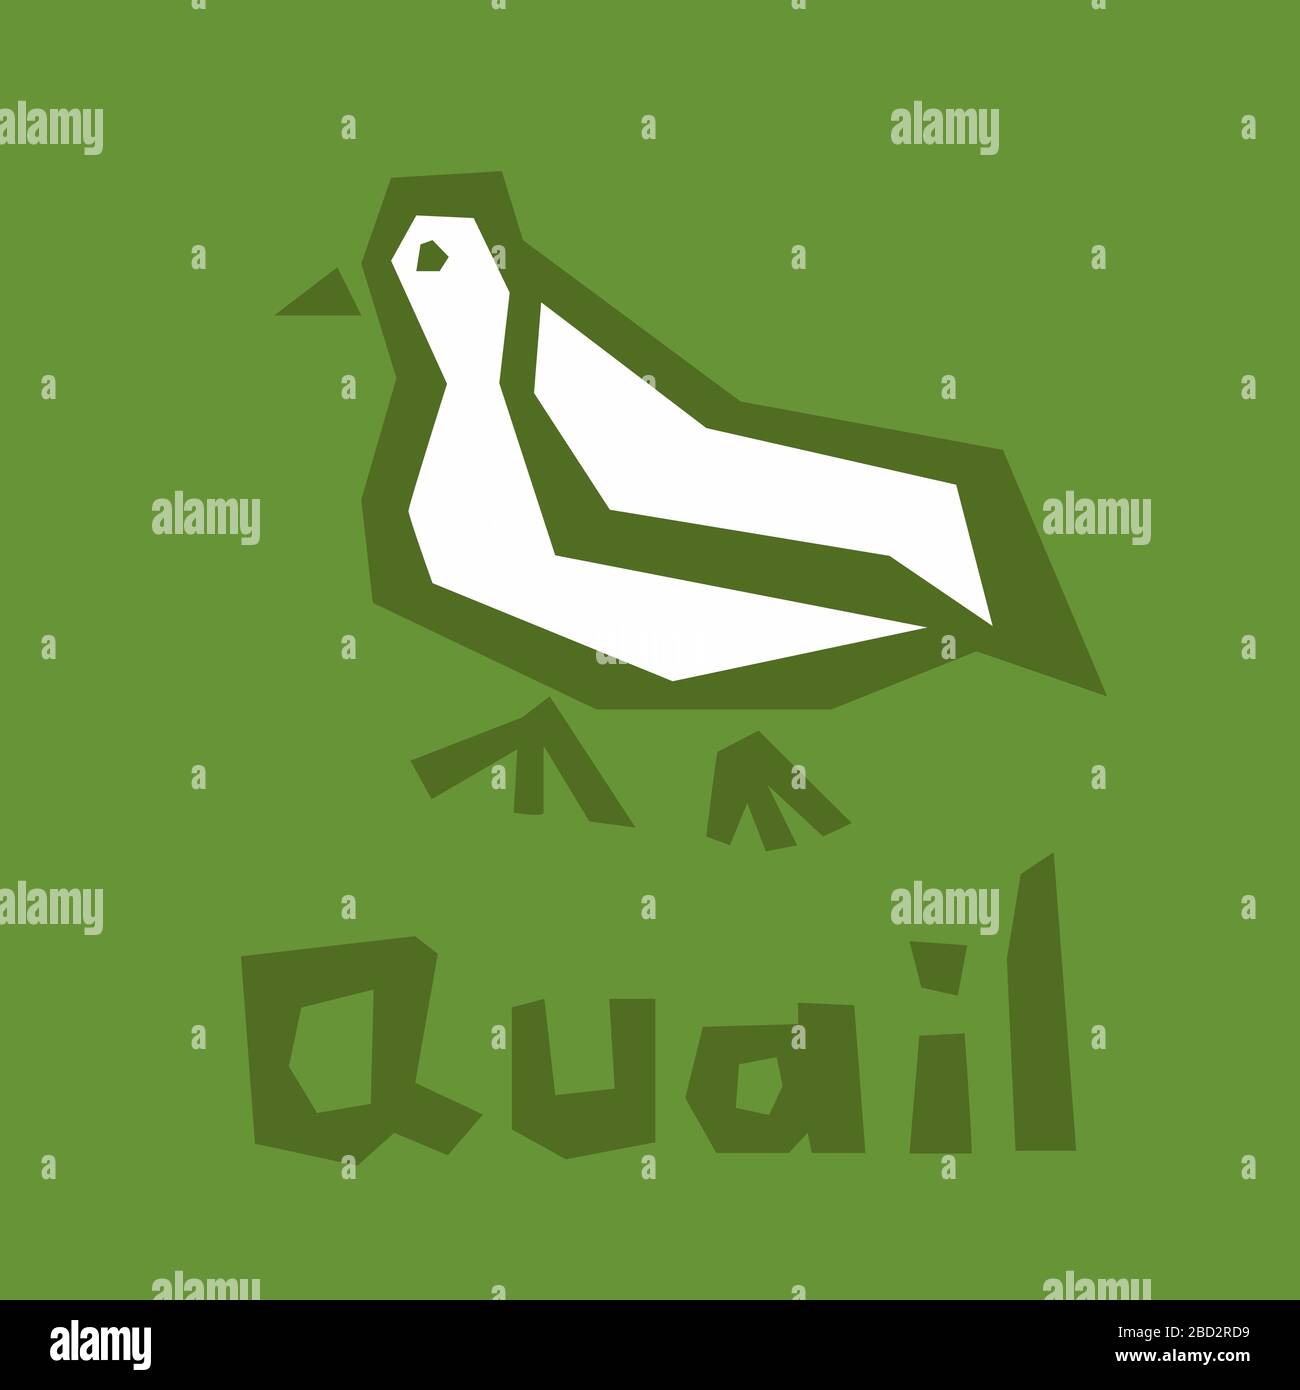 Logo Quail. Illustration vectorielle stylisée des oiseaux isolée sur fond vert. Icône représentant un joli caille. Style moderne et brutal. Icône blanche, contour épais Illustration de Vecteur